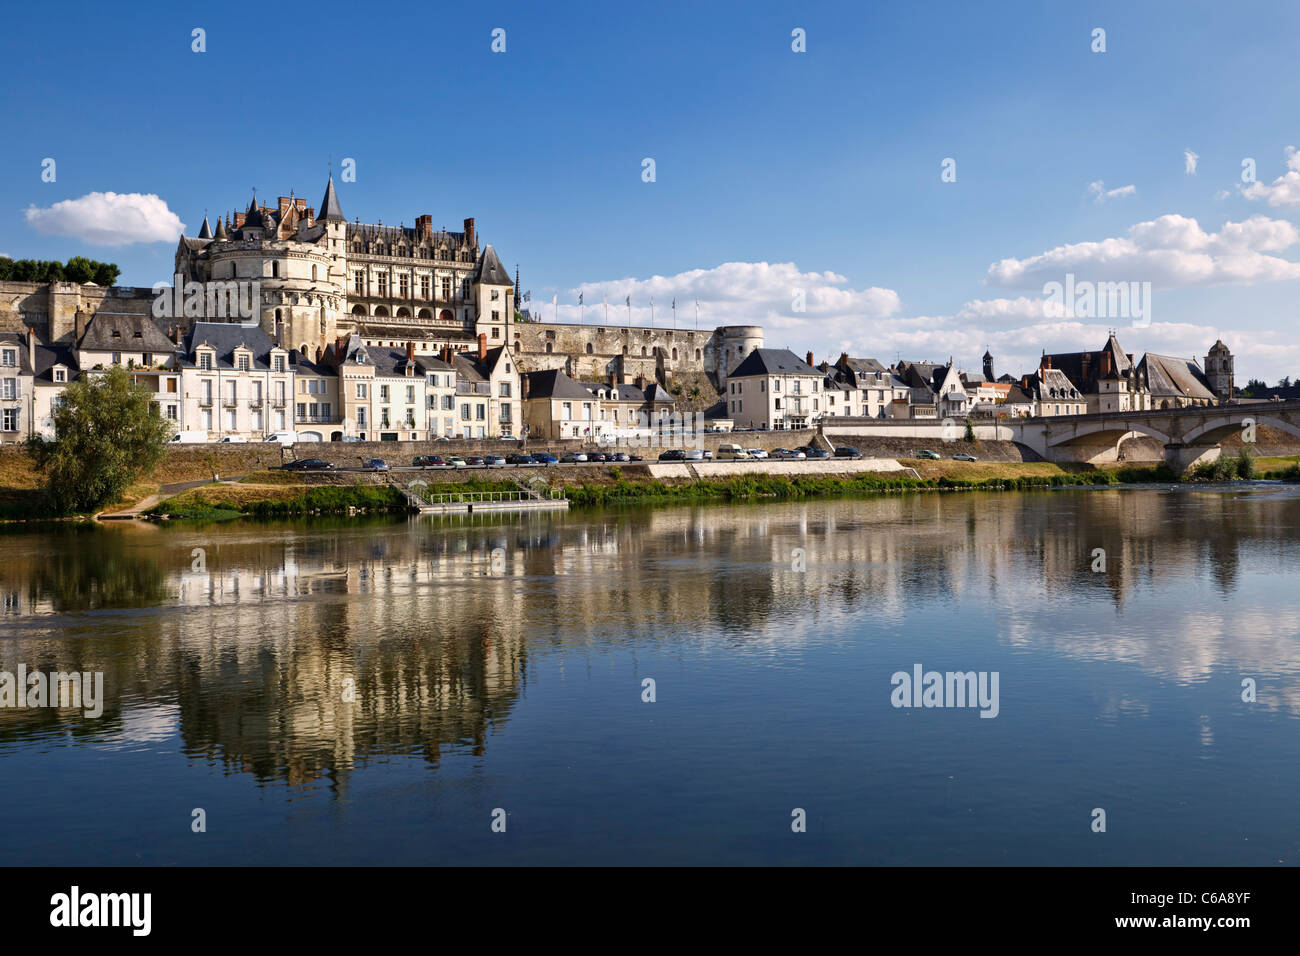 Chateau de la Loire à Amboise, Indre et Loire sur la Loire, France, Europe Banque D'Images